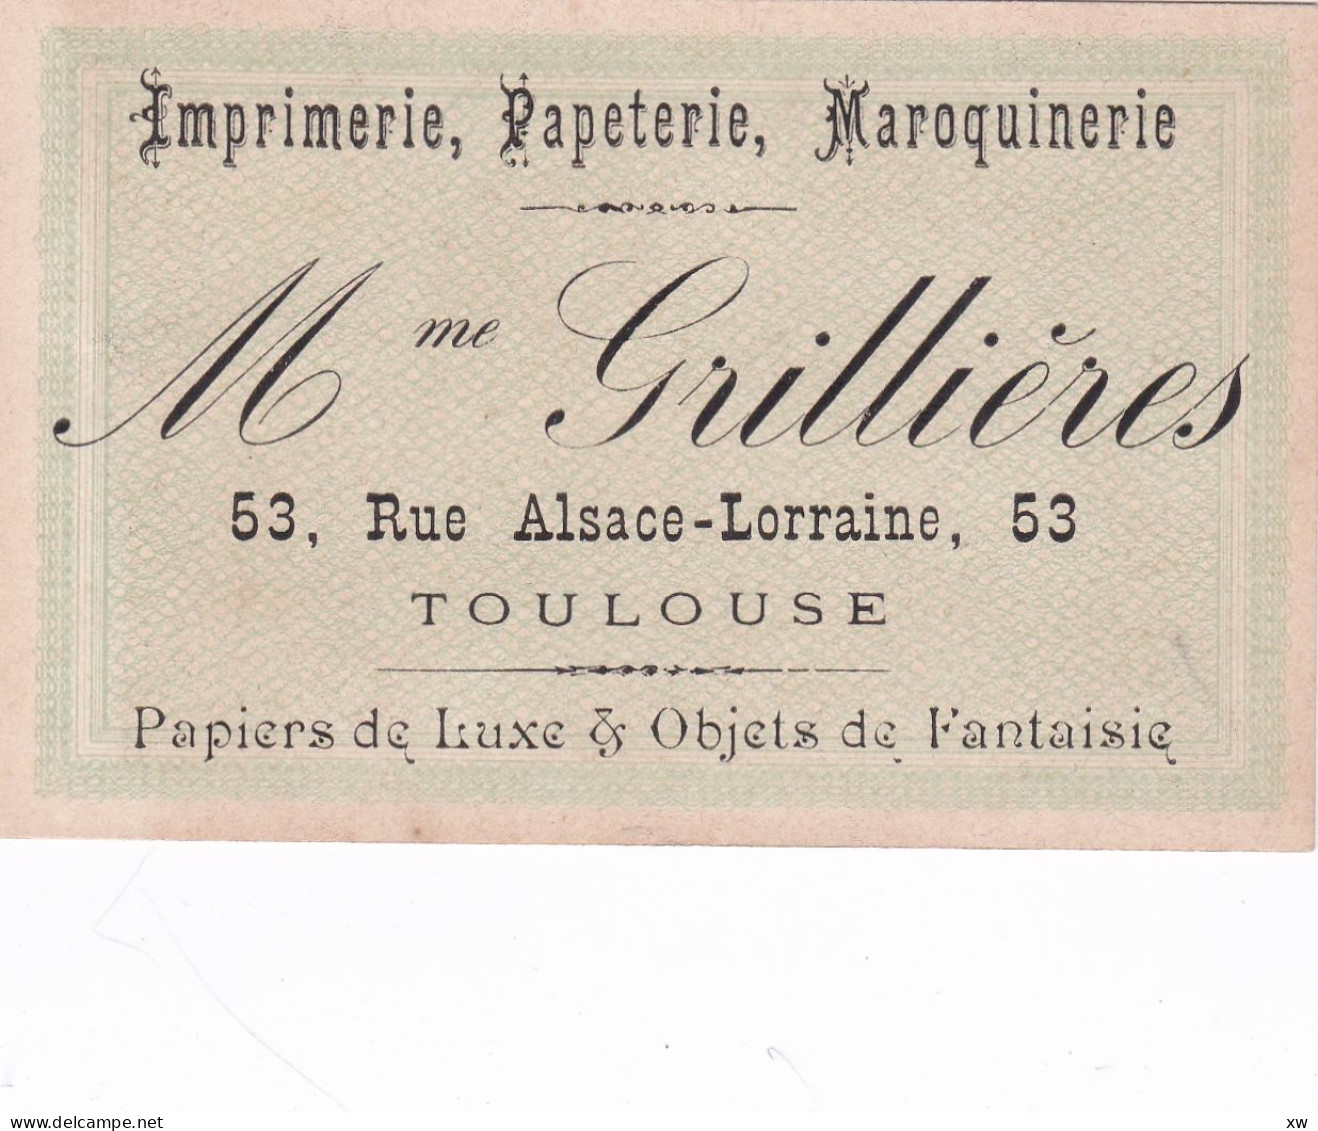 TOULOUSE -31- CARTE DE VISITE - Imprimerie, Papeterie; Maroquinerie - Mme GRILLIERES 53; Rue Alsace-Lorraine - 16-05-24 - Cartoncini Da Visita